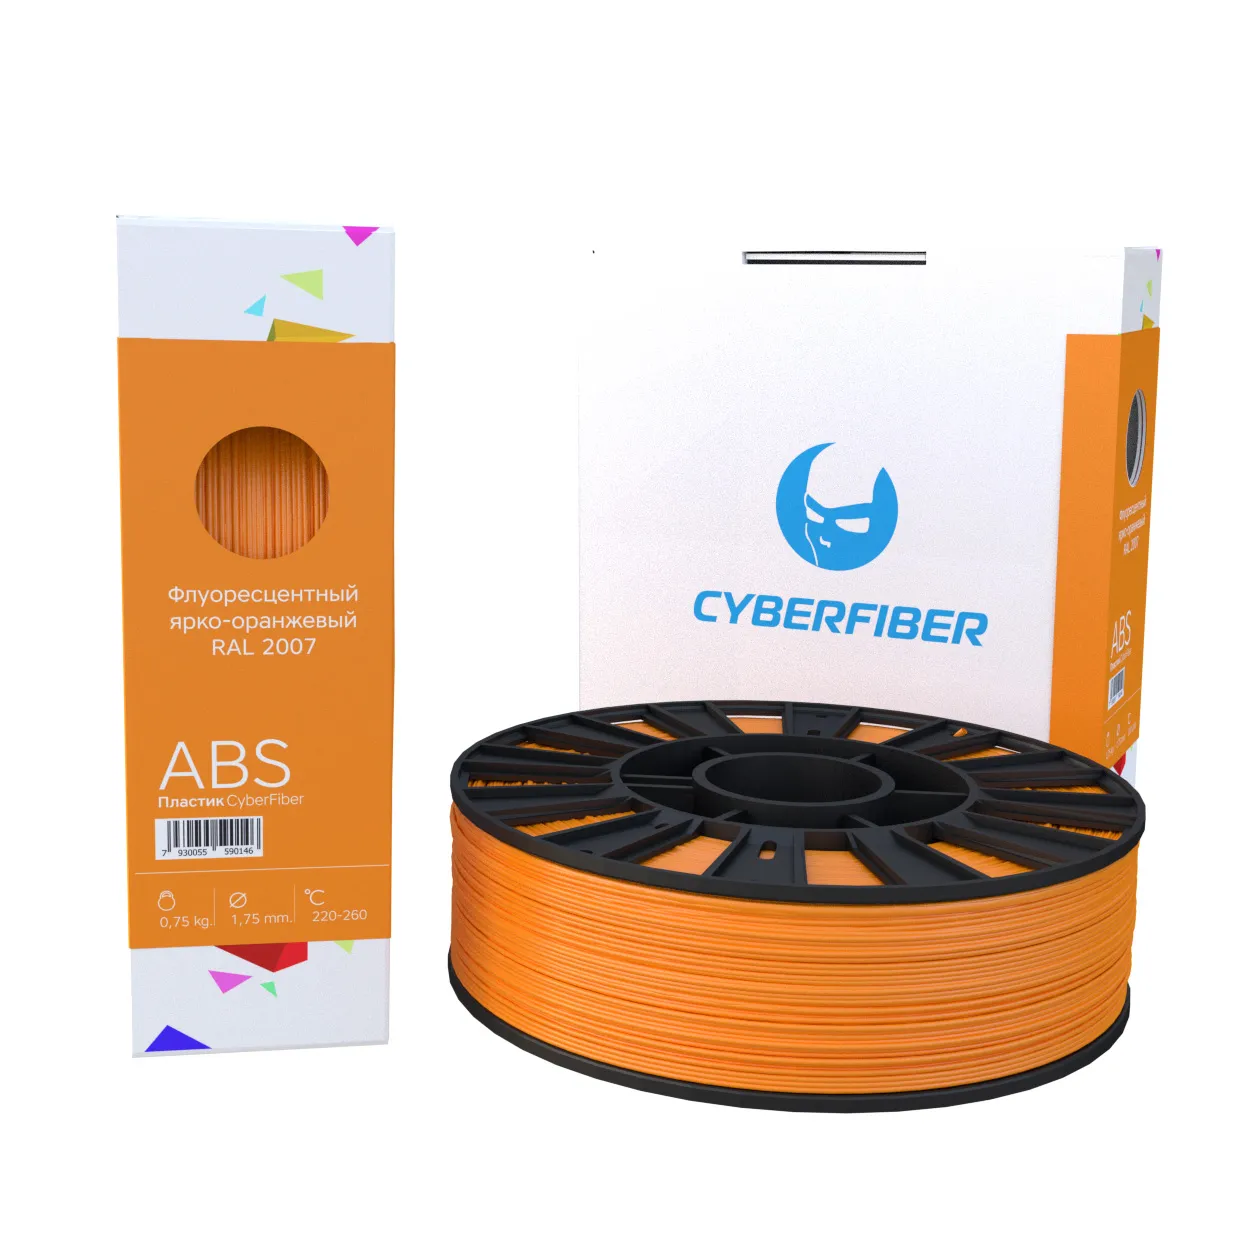 ABS пластик CyberFiber 1,75, флуоресцентный ярко-оранжевый, 750 г